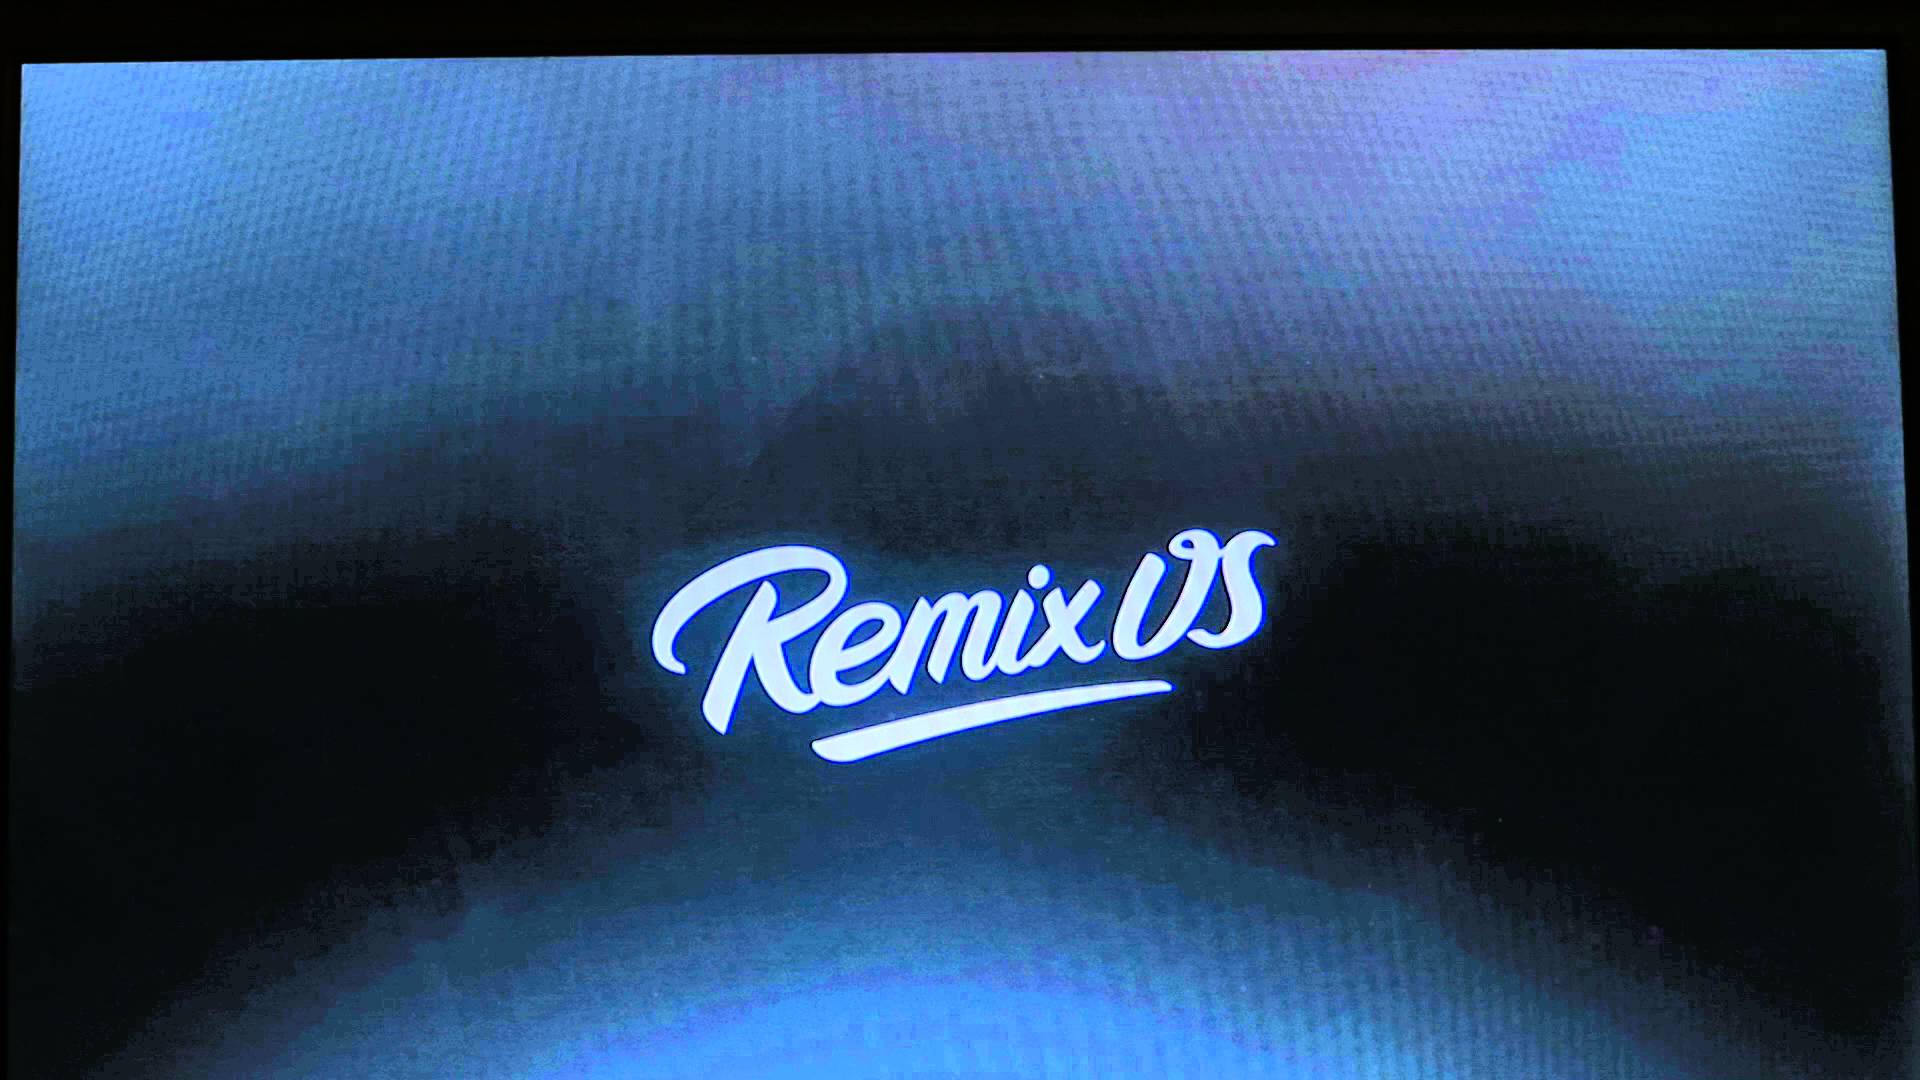 Remix - Remix Os , HD Wallpaper & Backgrounds